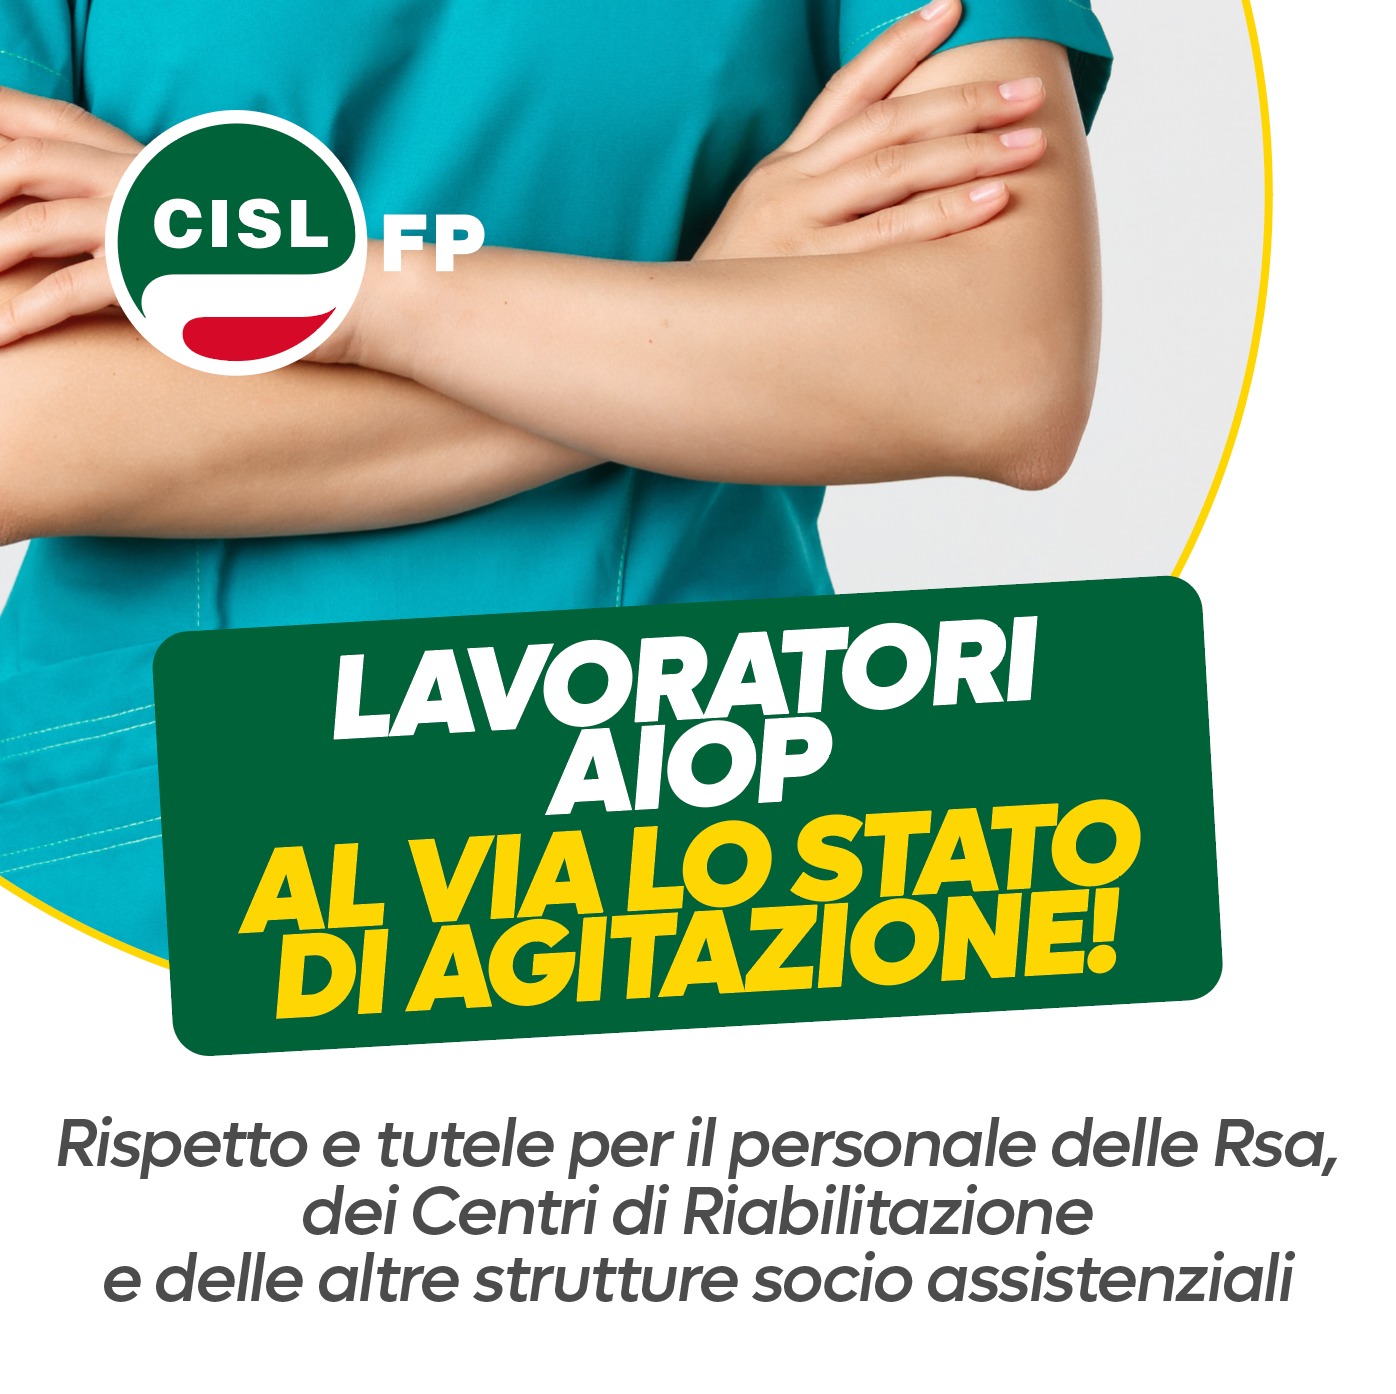 Contratti. Roberto Chierchia (Cisl Fp), Aiop non mantiene impegno sul CCNL dei lavoratori delle Rsa. Al via lo stato di agitazione | Cisl Fp | Funzione Pubblica